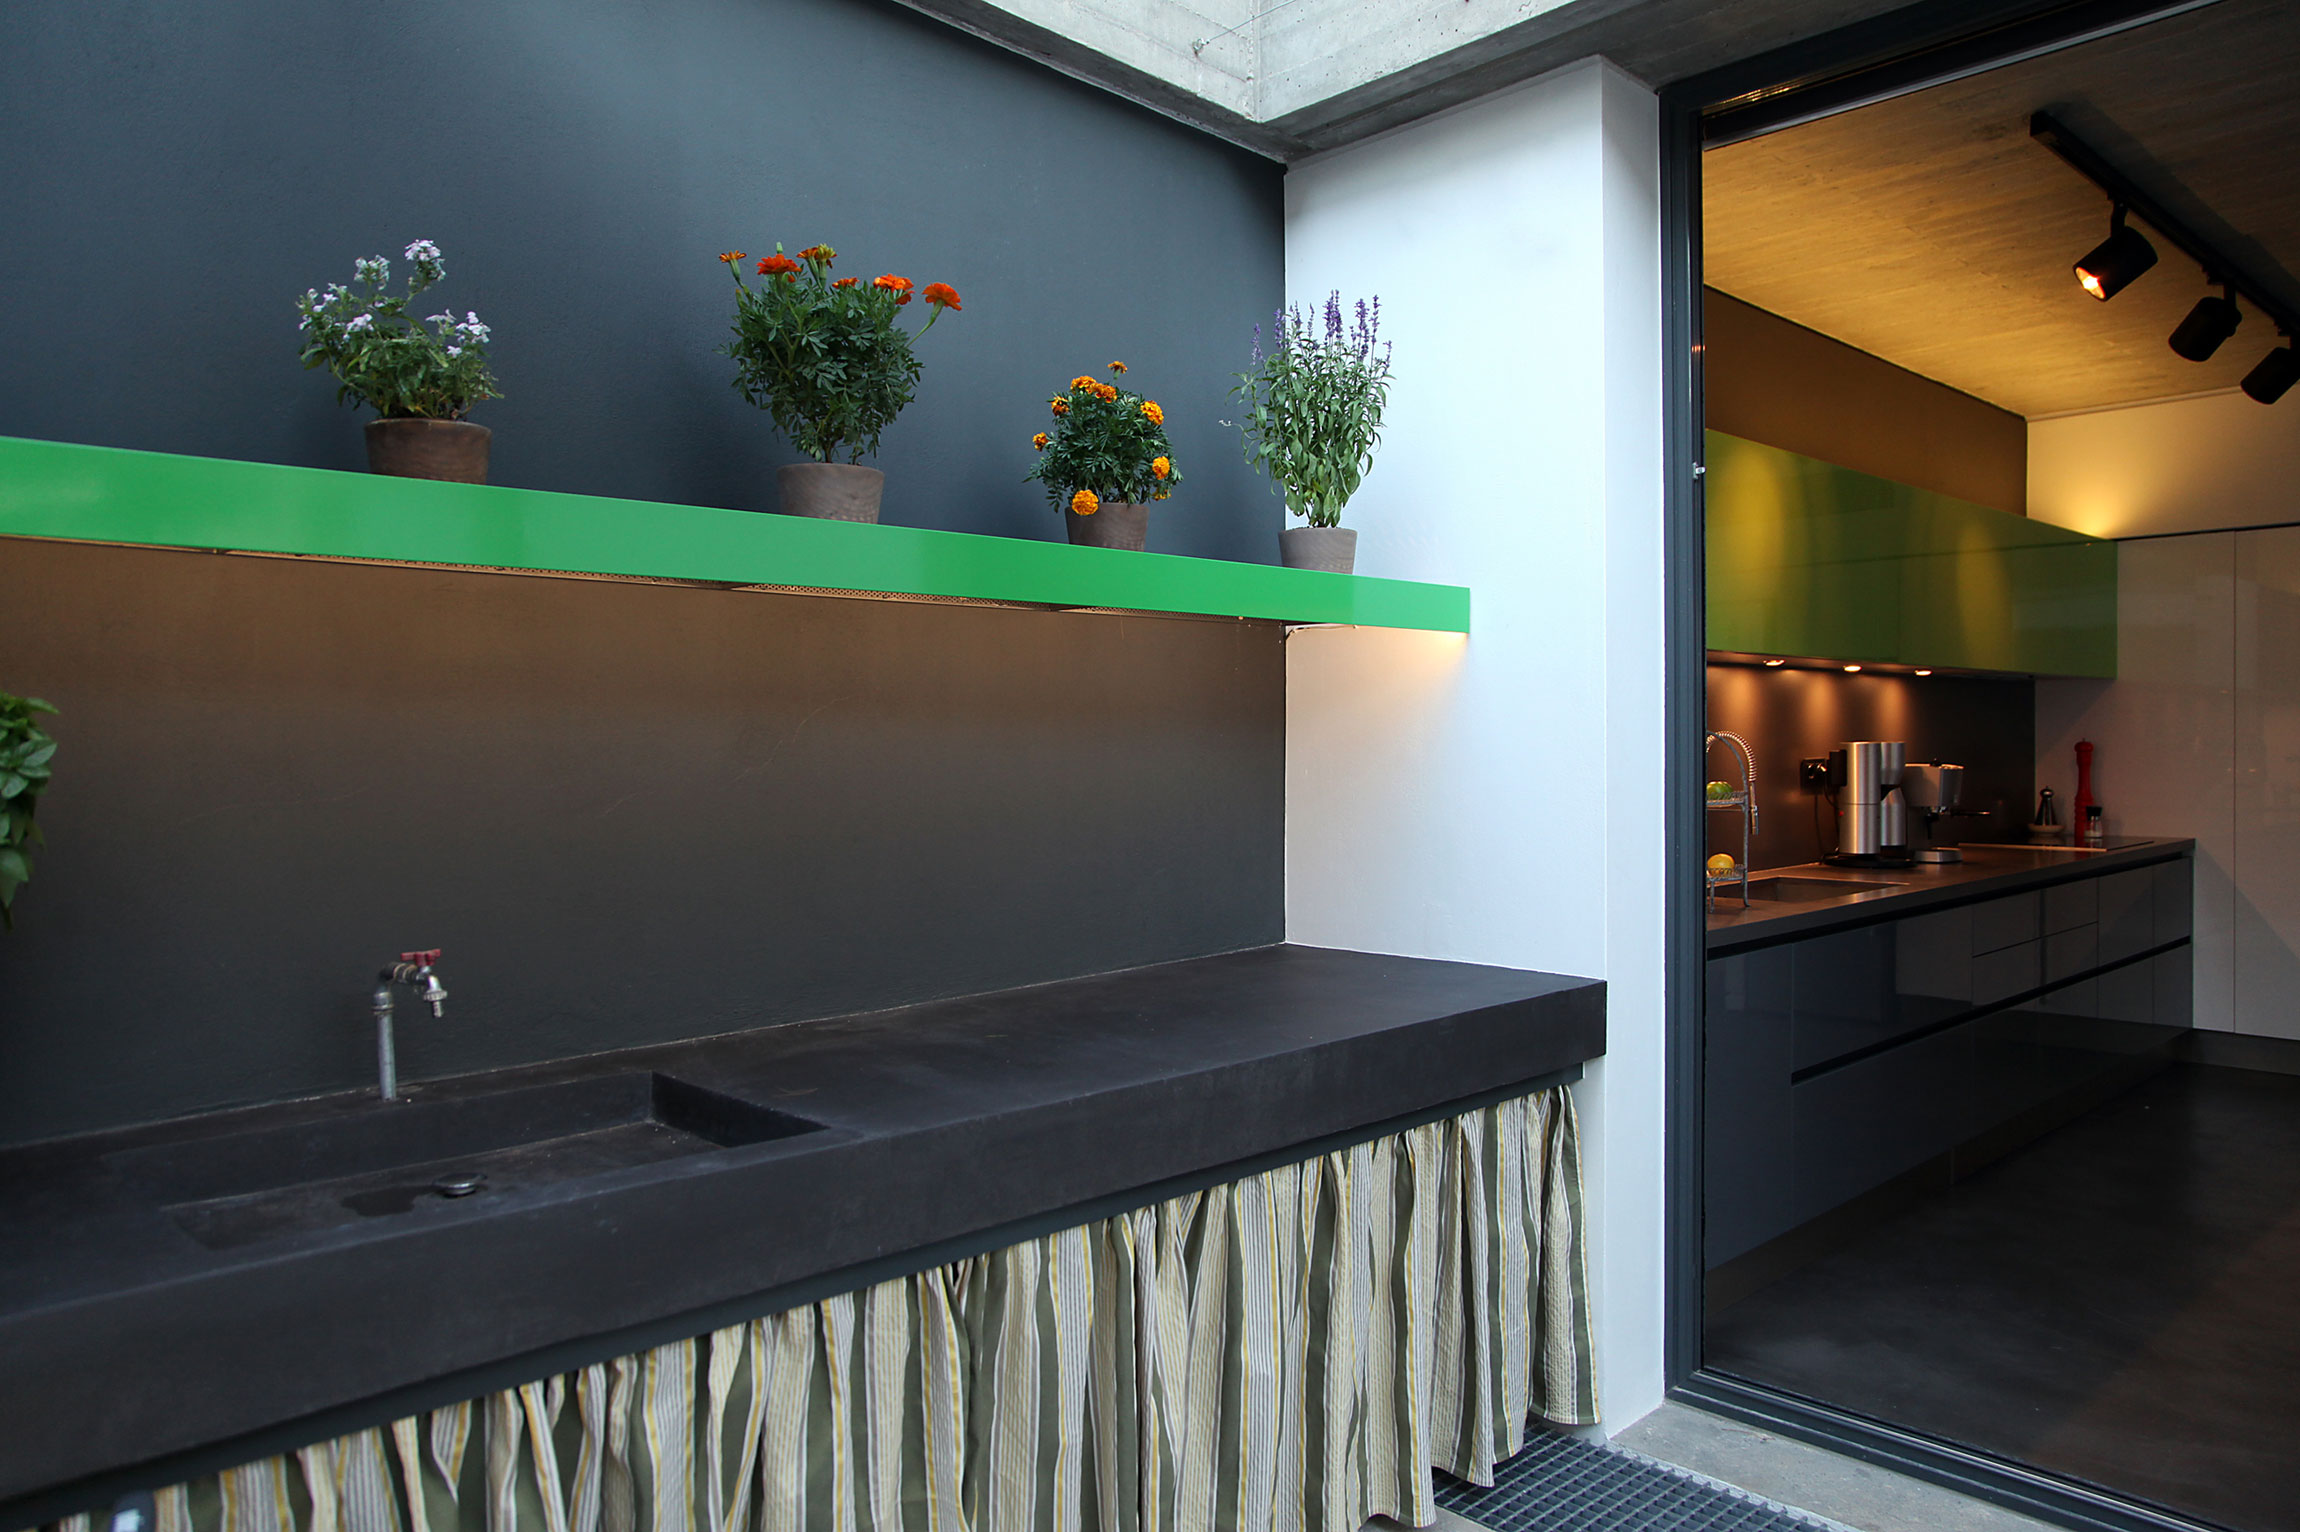 Простой дизайн интерьера дома: комнатные растения над рабочей поверхностью